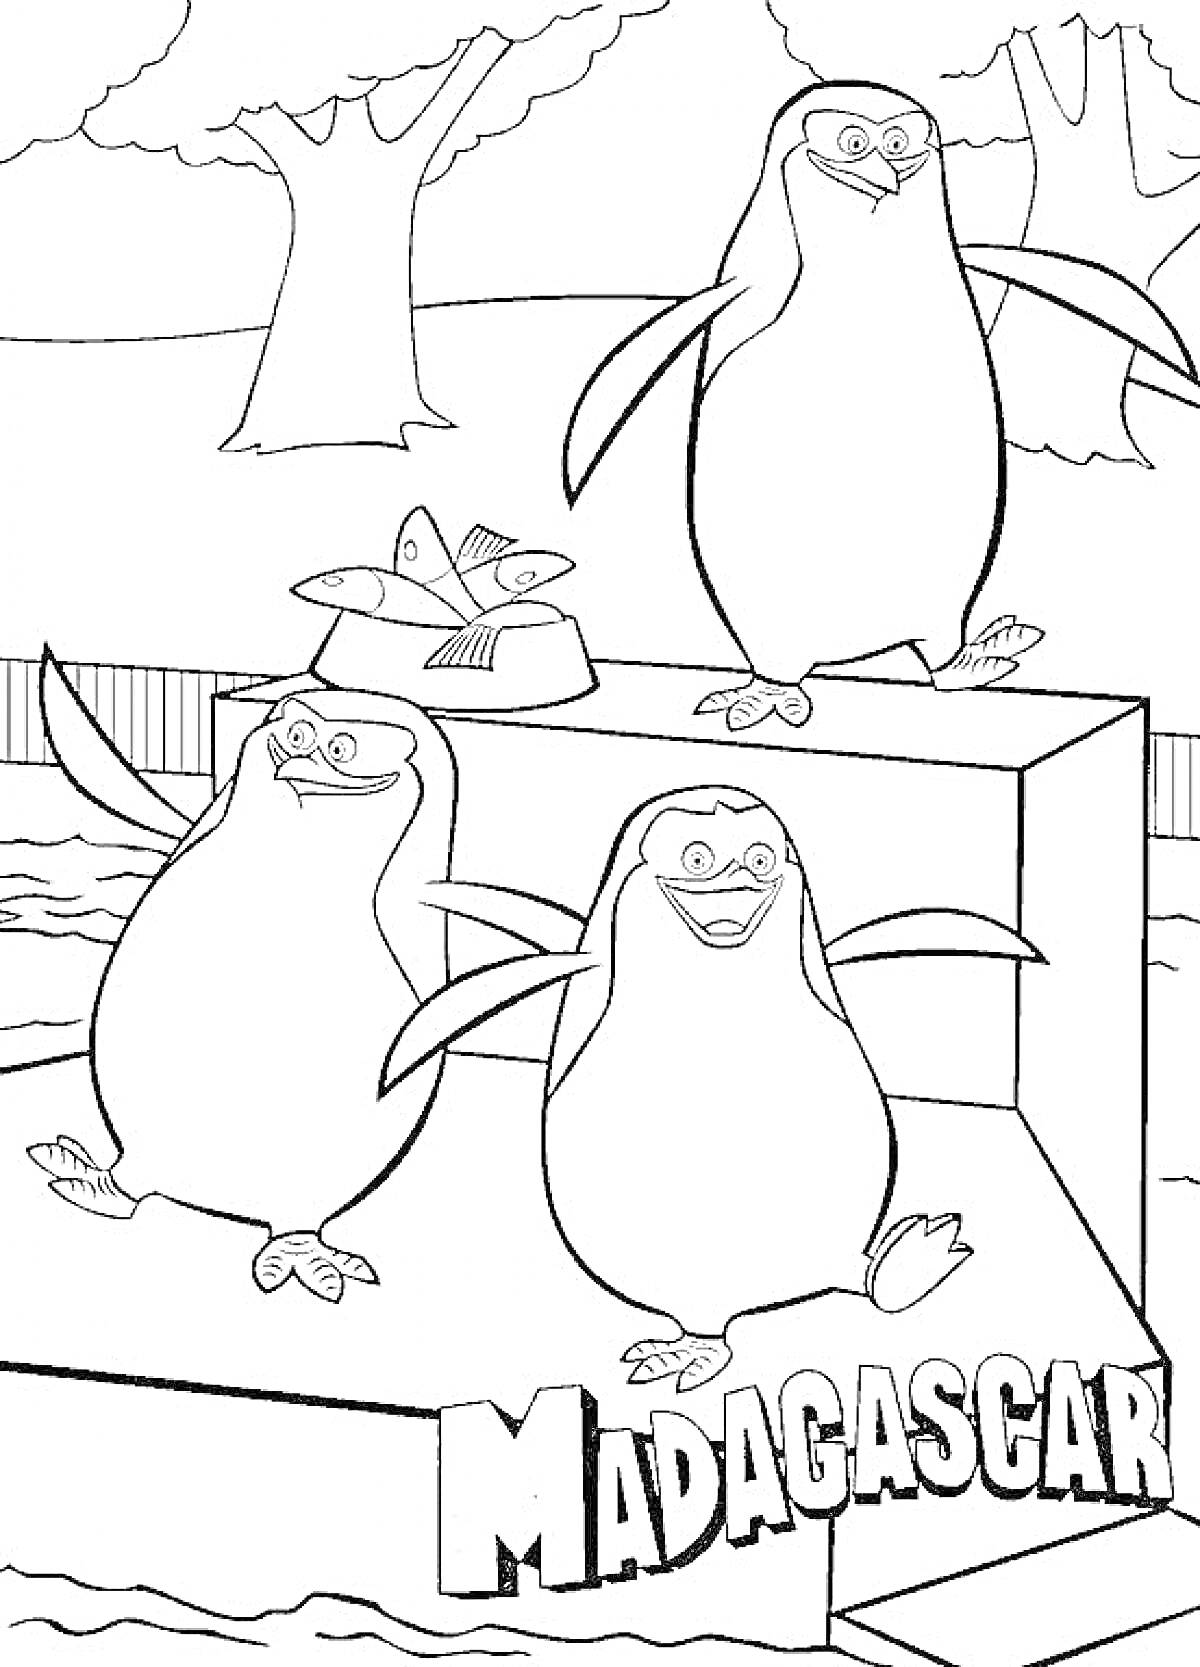 Пингвины на платформе в окружении деревьев и ограждения с надписью 